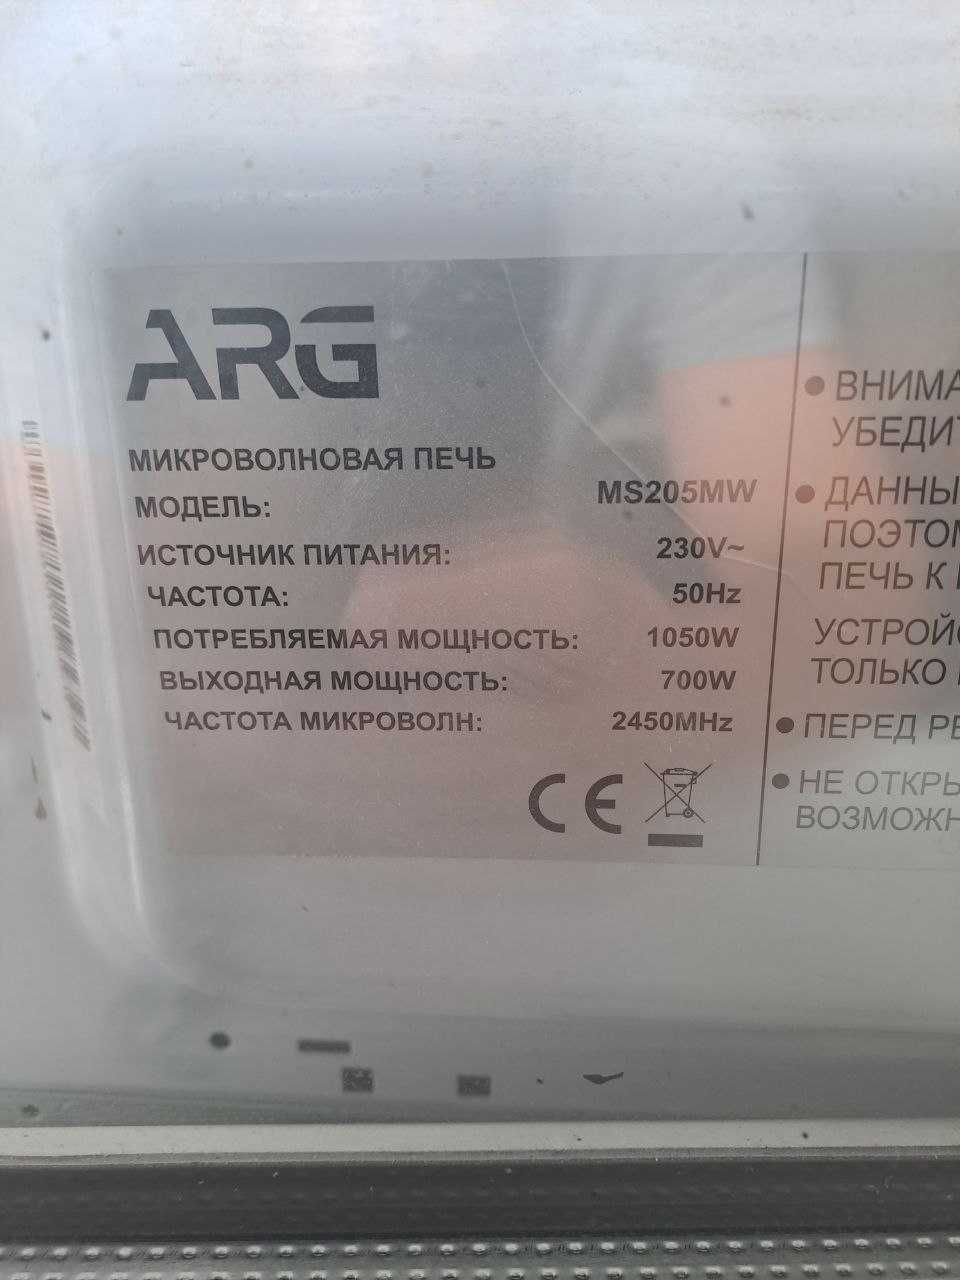 Срочно продам микроволновую печь ARG MS205MW